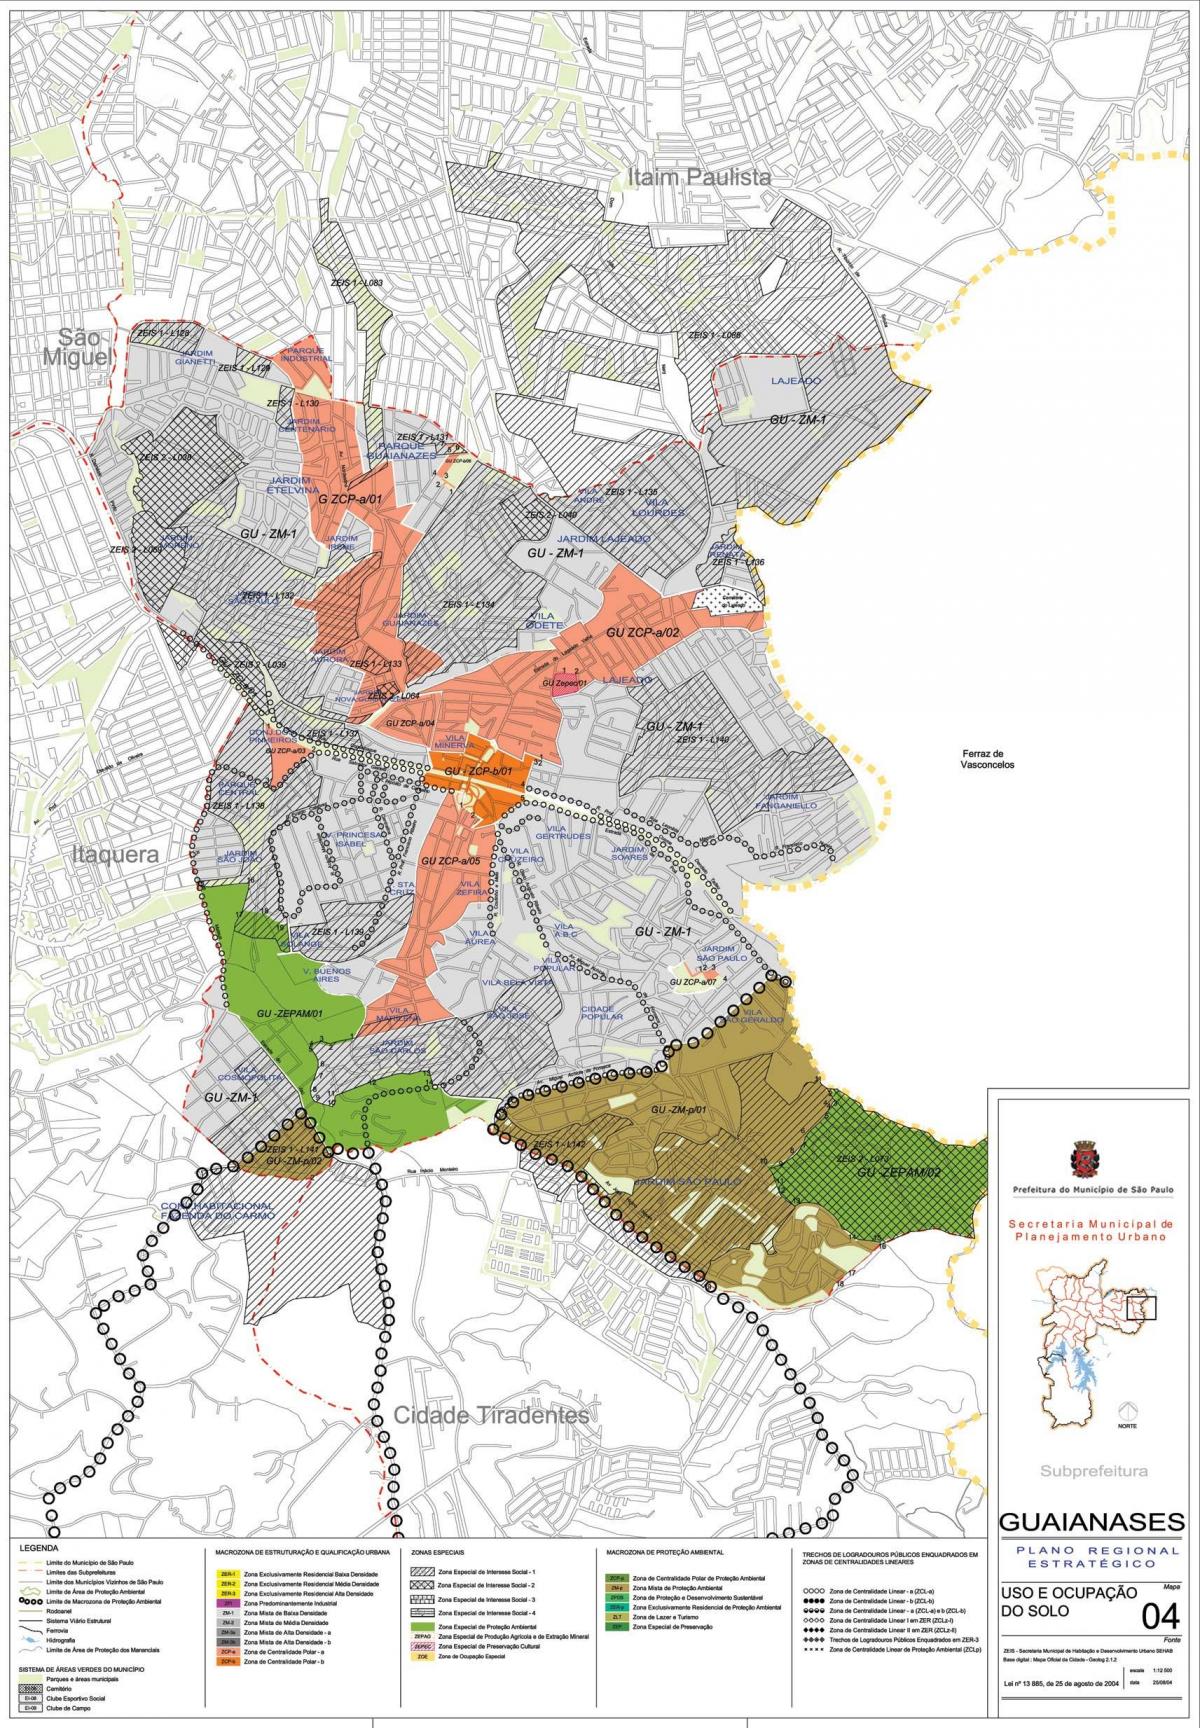 Harta e Guaianases São Paulo - Pushtimi i tokës